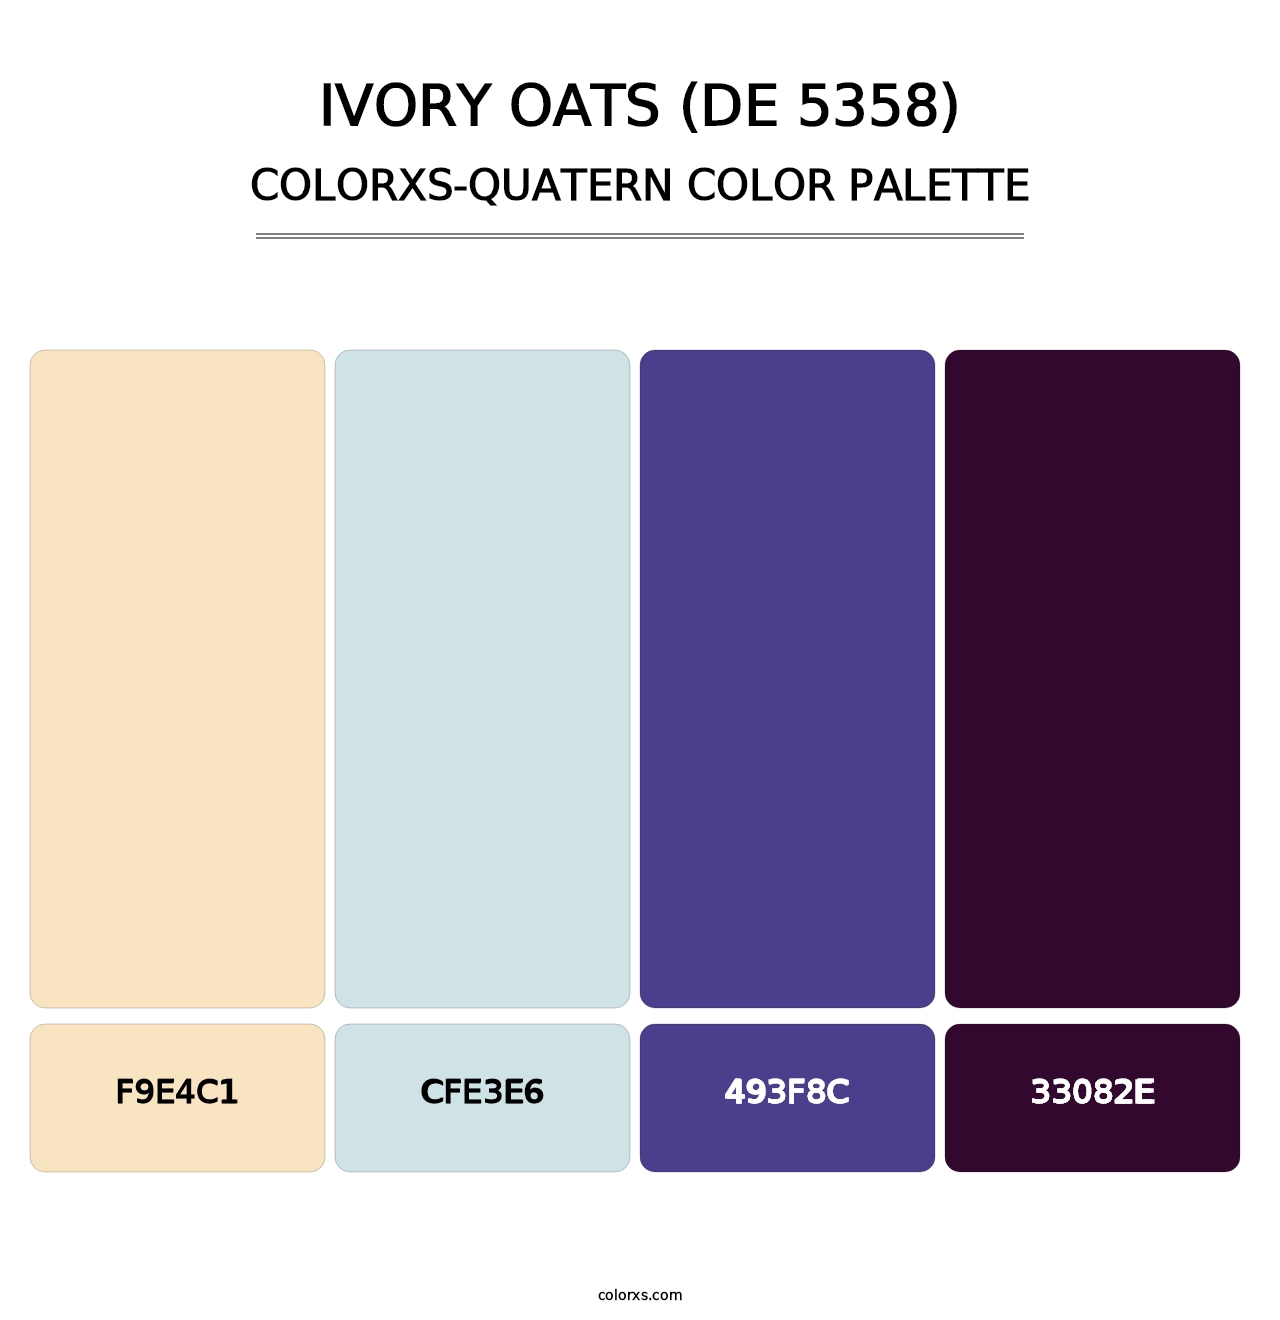 Ivory Oats (DE 5358) - Colorxs Quatern Palette